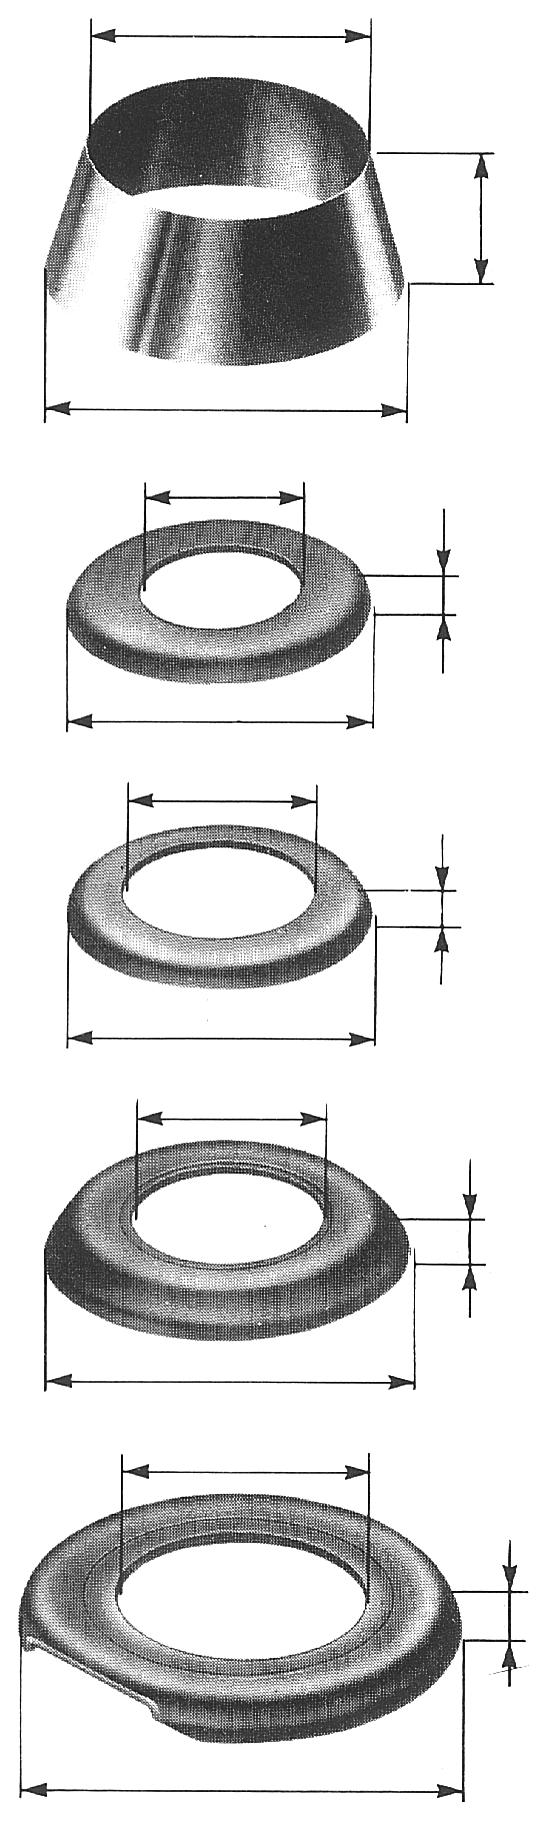 Dustcontrol Accessories Suction Casings Spare Parts for Suction Casings D1 Description Dimension Part No. D1 D2 H in/mm in/mm in/mm H Plastic ring for 5S 4.8 /121 5.